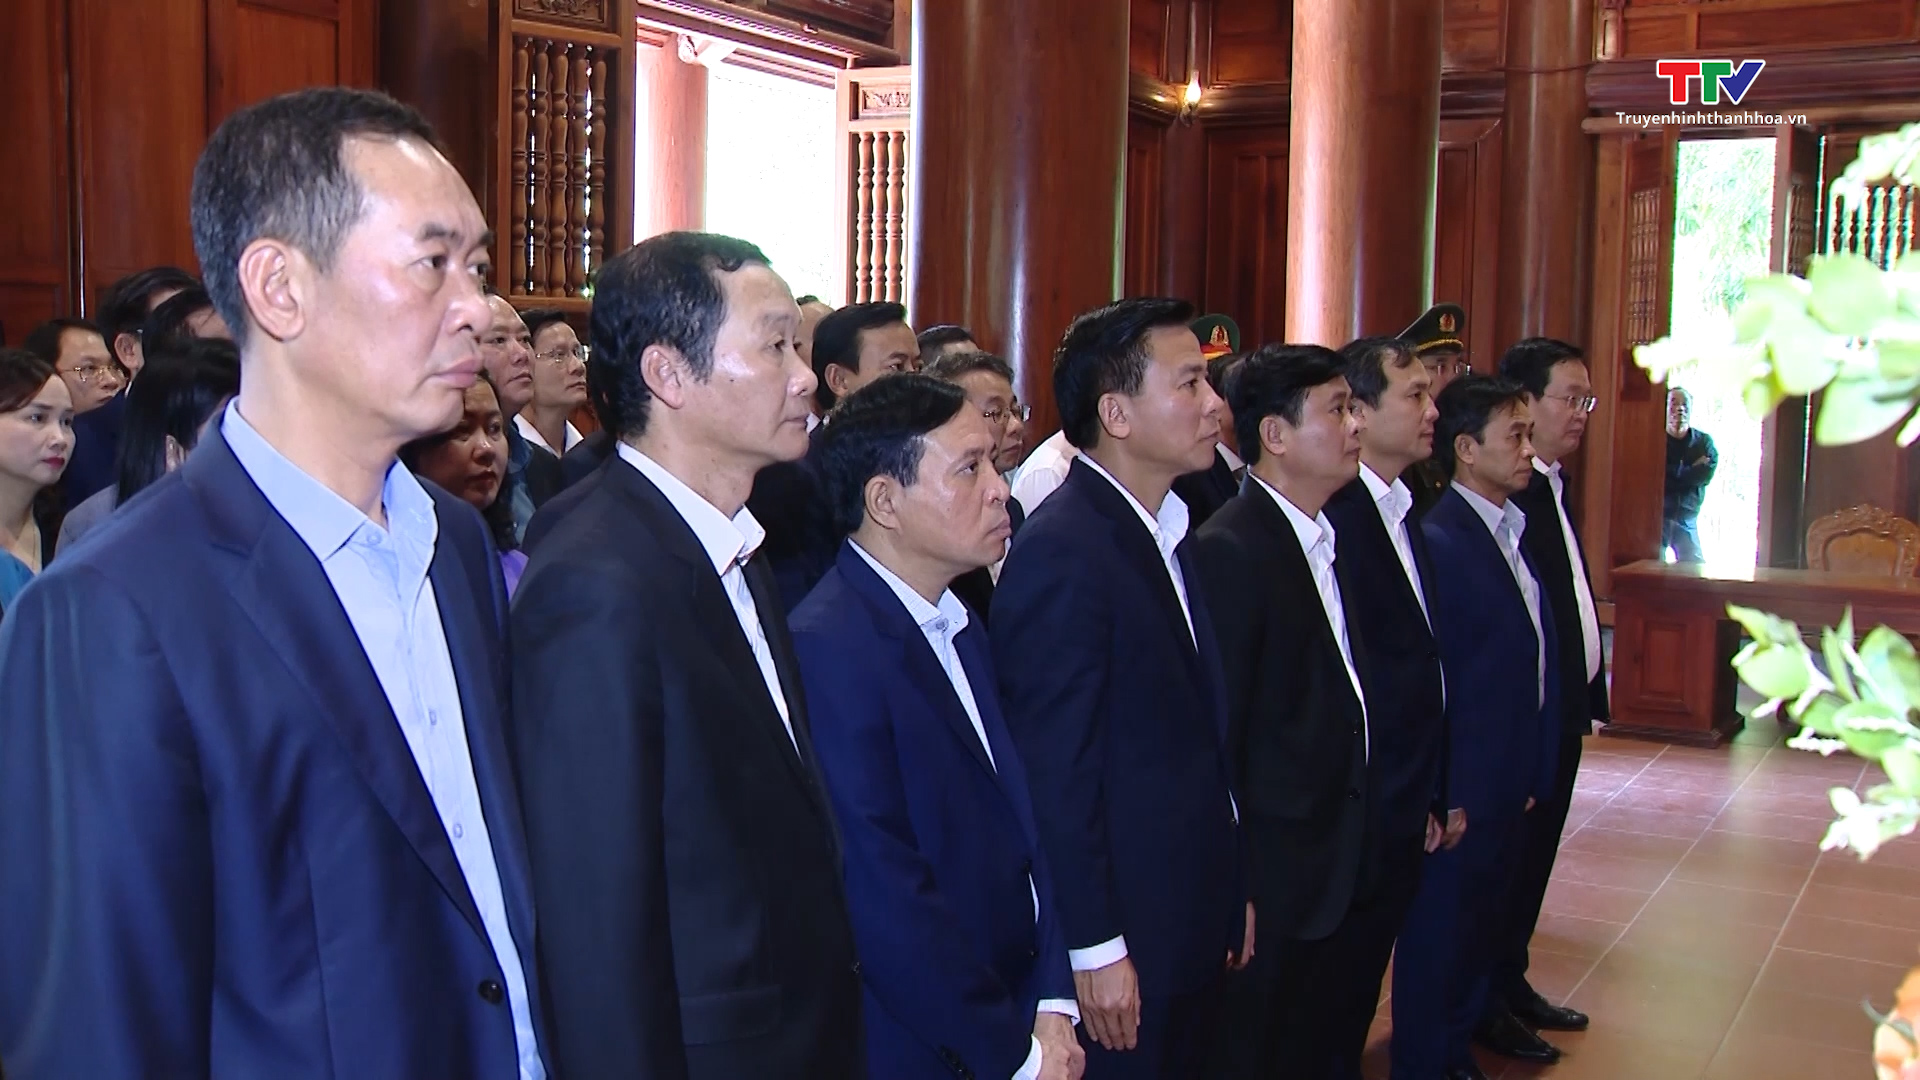 Đoàn đại biểu 3 tỉnh Thanh Hóa - Nghệ An - Hà Tĩnh dâng hương tưởng niệm Chủ tịch Hồ Chí Minh tại Khu di tích Quốc gia đặc biệt Kim Liên- Ảnh 1.